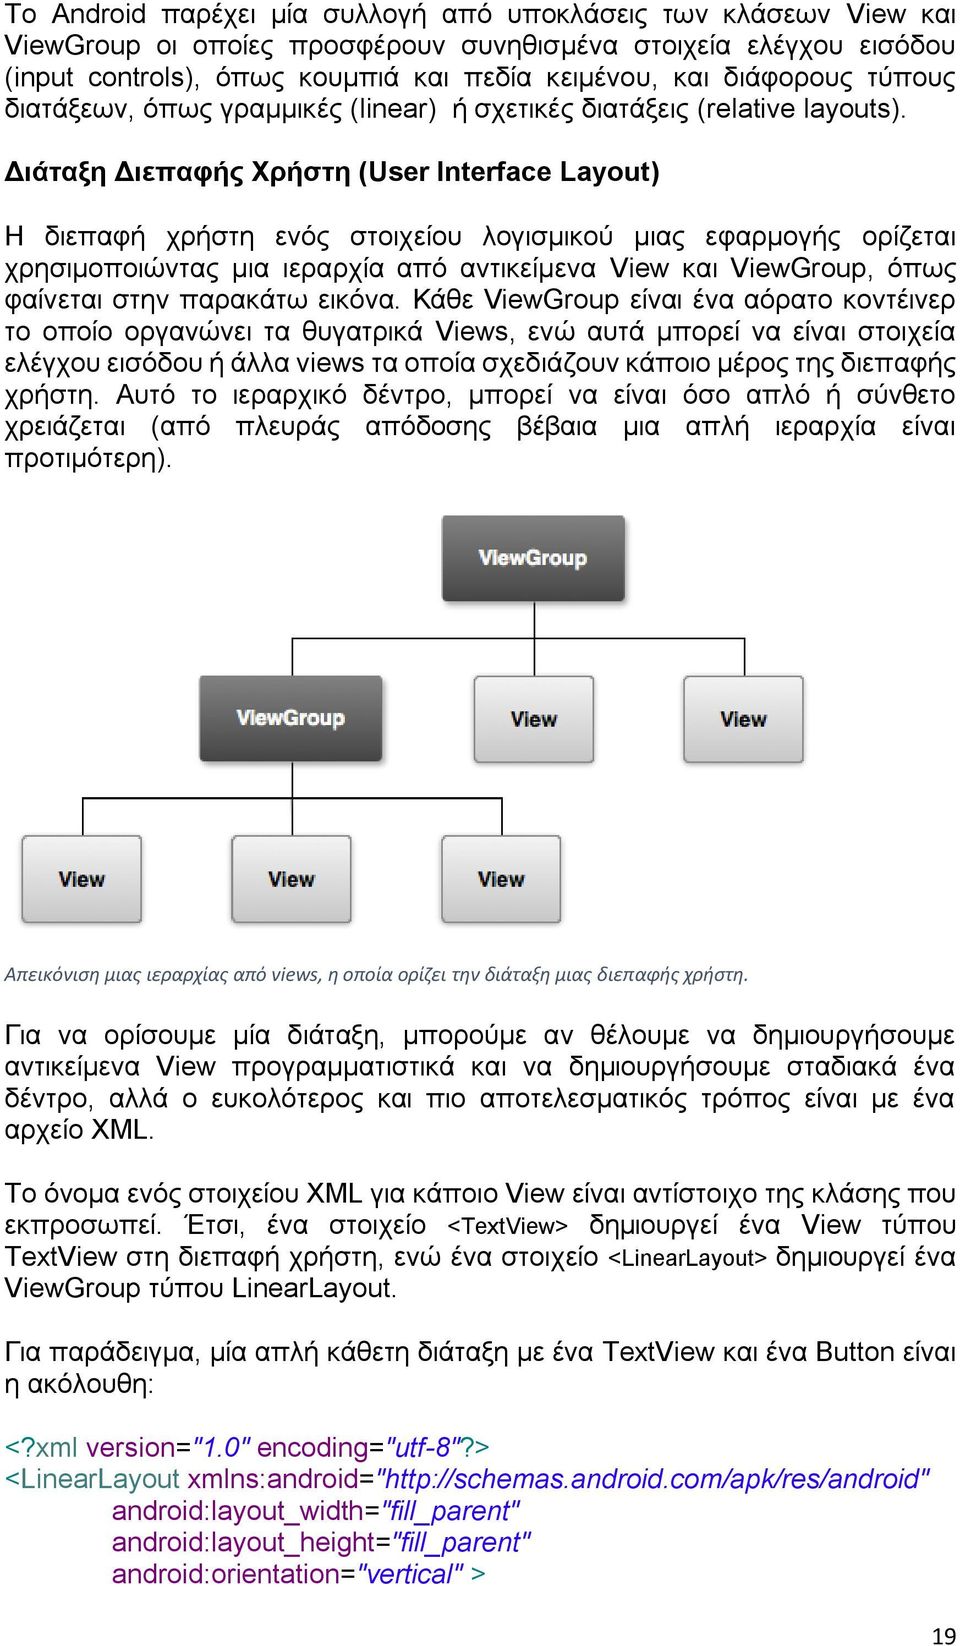 Διάταξη Διεπαφής Χρήστη (User Interface Layout) Η διεπαφή χρήστη ενός στοιχείου λογισμικού μιας εφαρμογής ορίζεται χρησιμοποιώντας μια ιεραρχία από αντικείμενα View και ViewGroup, όπως φαίνεται στην